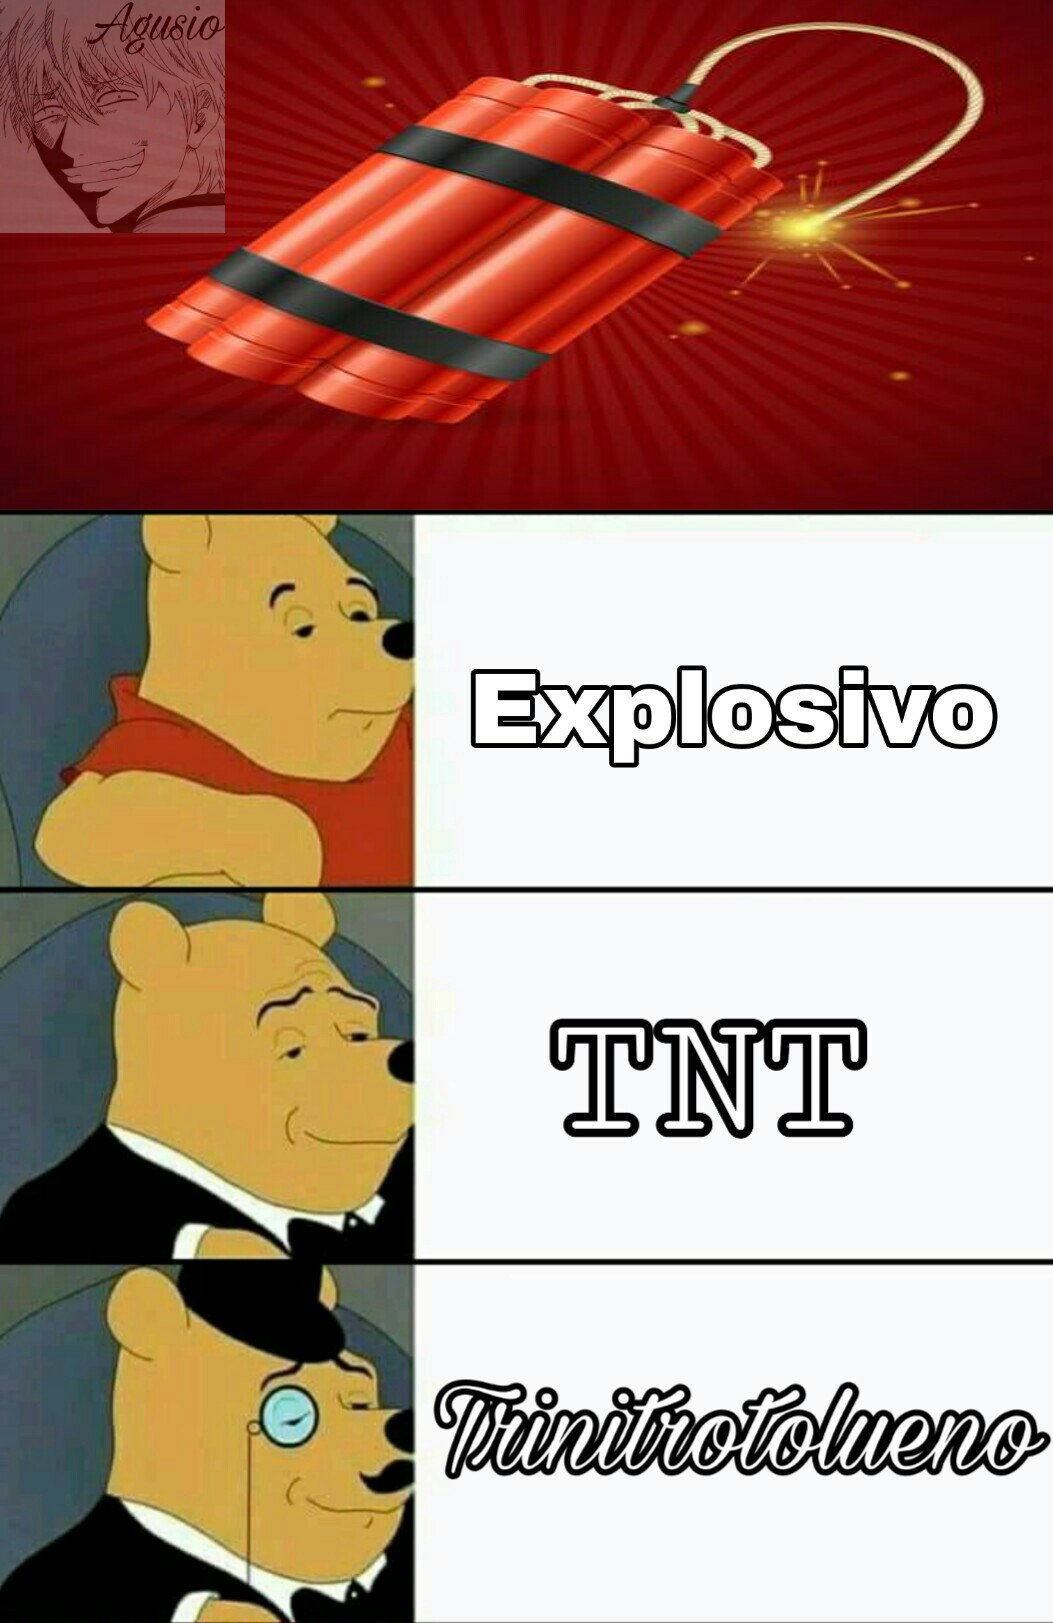 De seguro que nadie sabe que sinifica TNT - meme